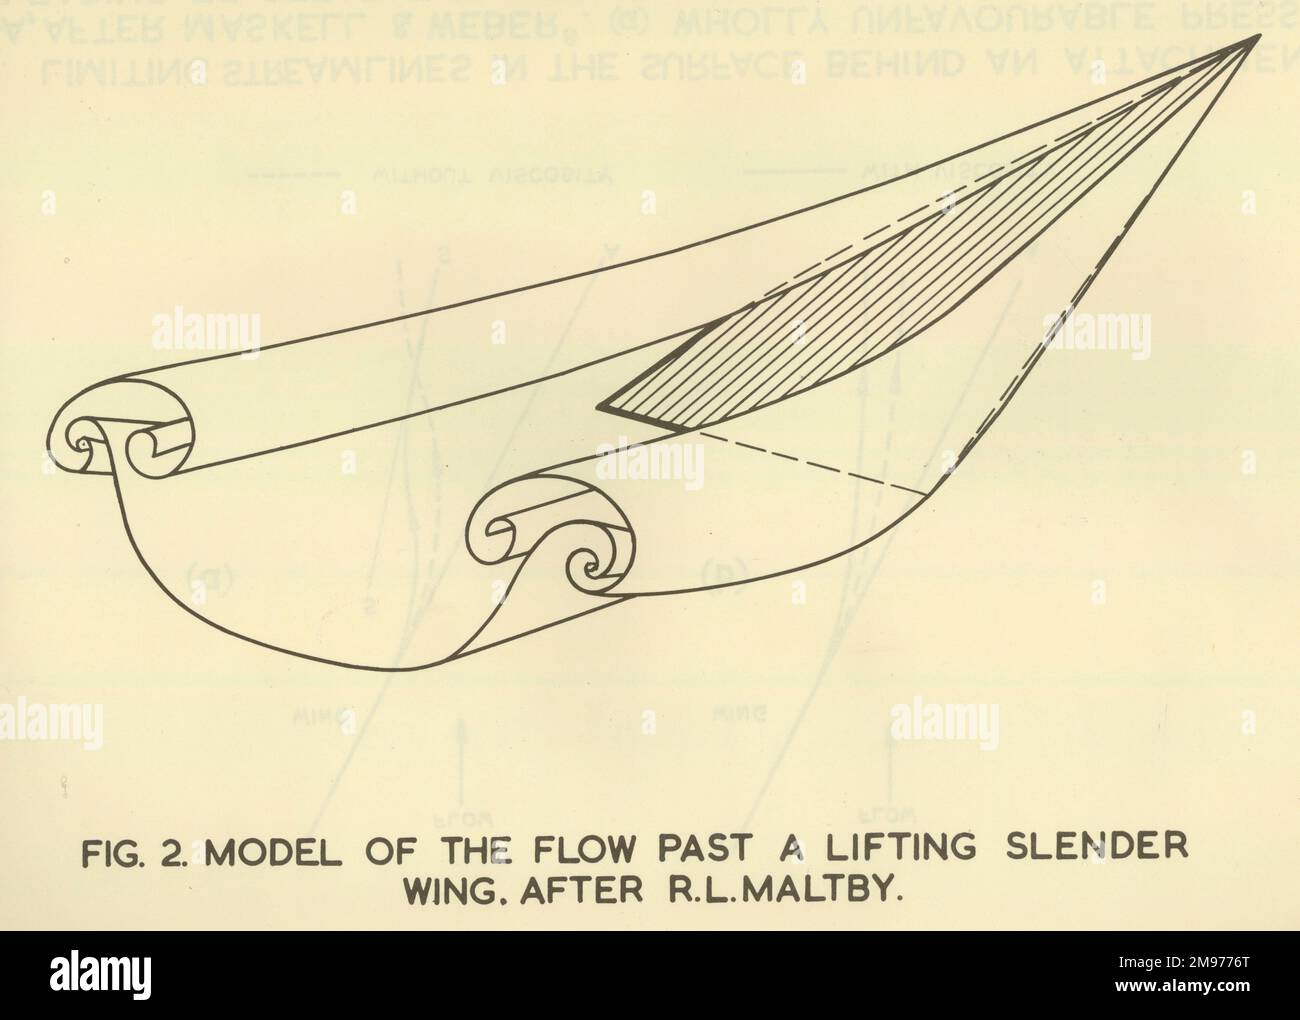 Abbildung 2 aus 56007286. Modell der Strömung an einem anhebenden schlanken Flügel vorbei. Nach R.L. Maltby. Stockfoto